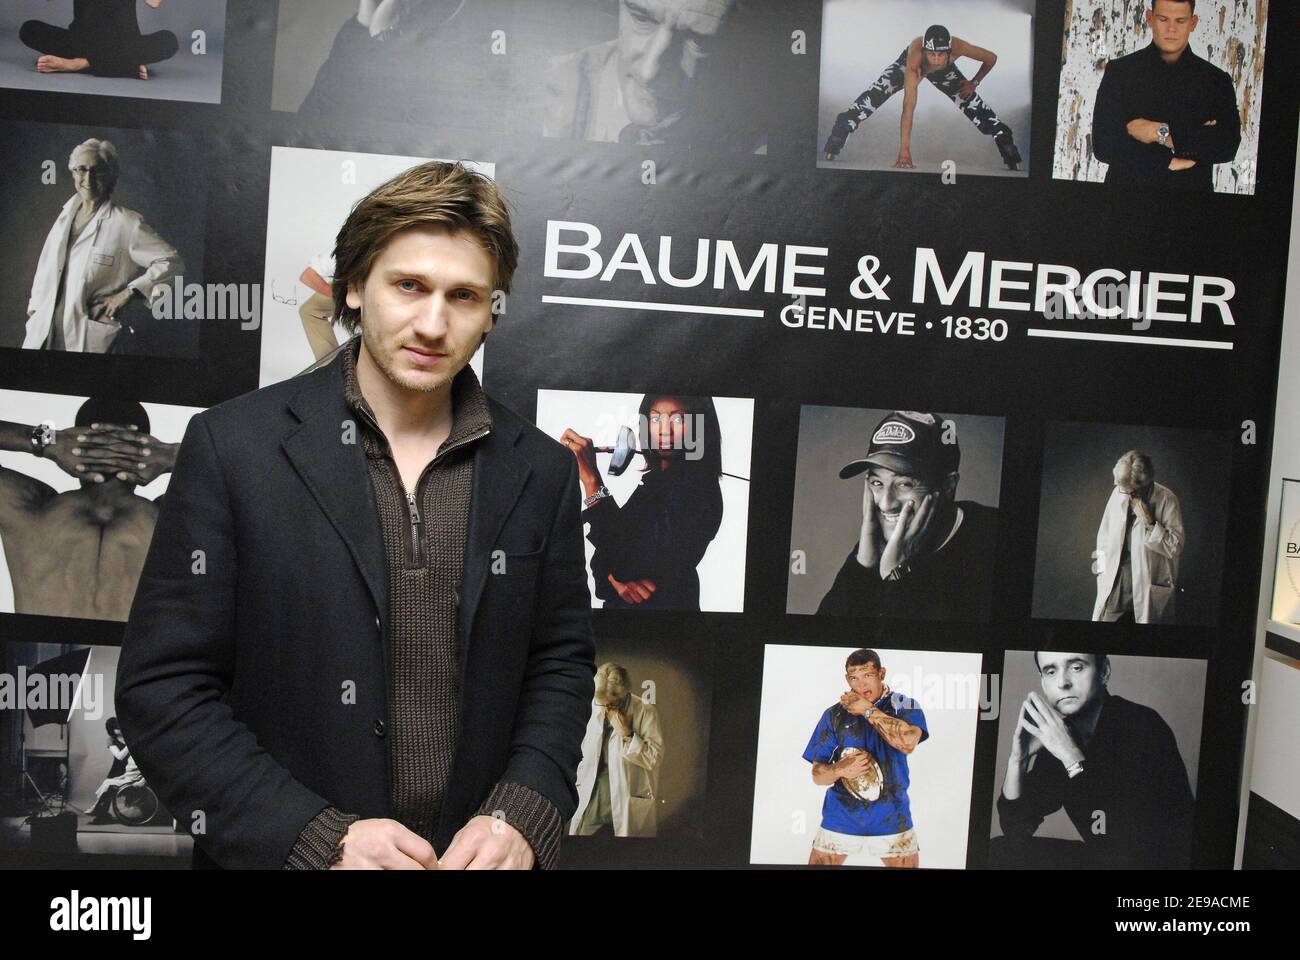 Der französische Schauspieler Stanislas Merhar nimmt am 19. Mai 2006 an einem karitativen Verkauf von Baume & Mercier Uhren im 'Le Carrousel du Louvre' in Paris Teil. Foto von Bruno Klein/ABACAPRESS.COM Stockfoto